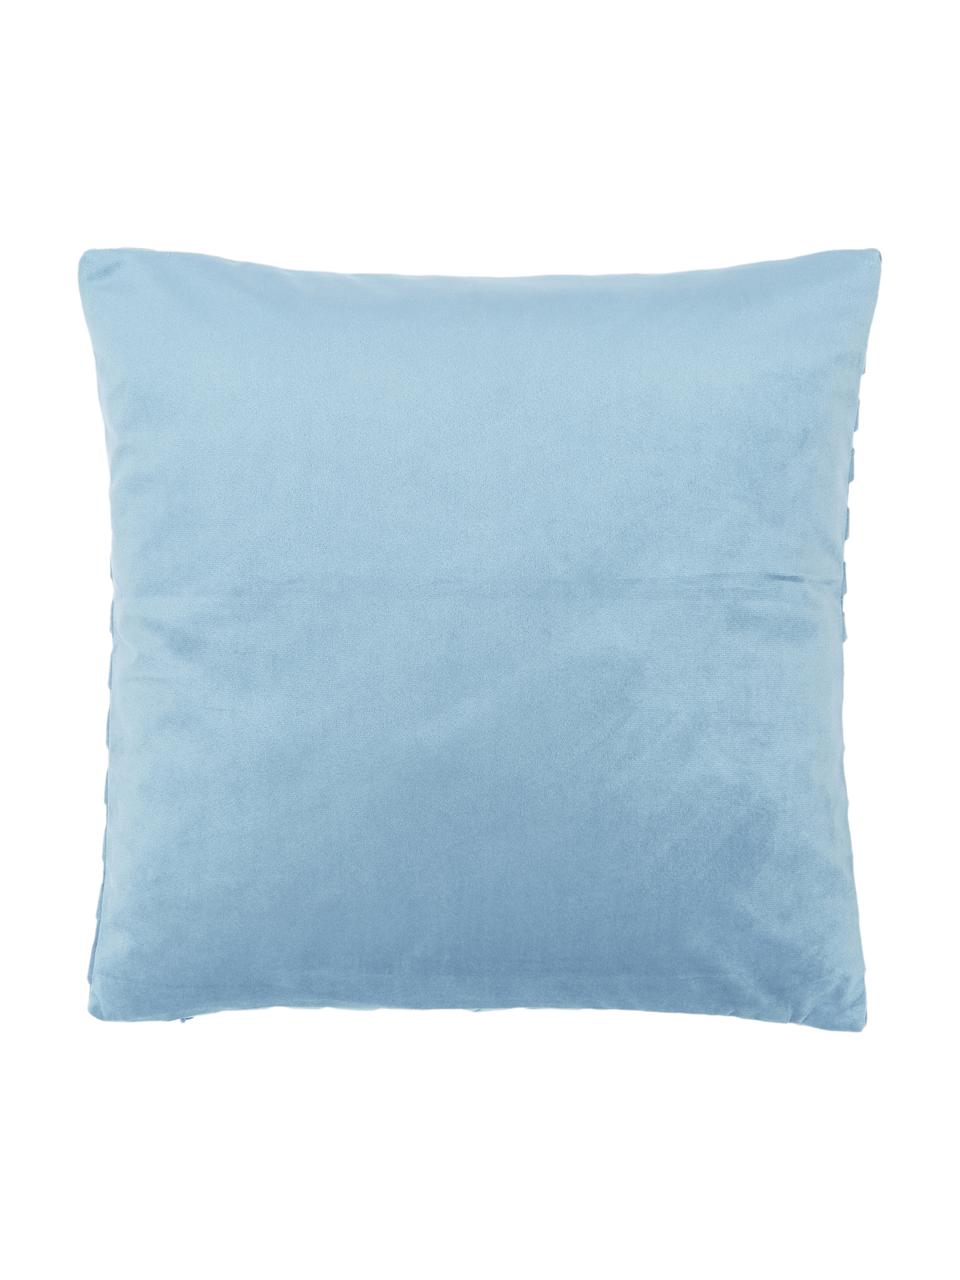 Poszewka na poduszkę z aksamitu Lucie, 100% aksamit (poliester), Niebieski, S 45 x D 45 cm